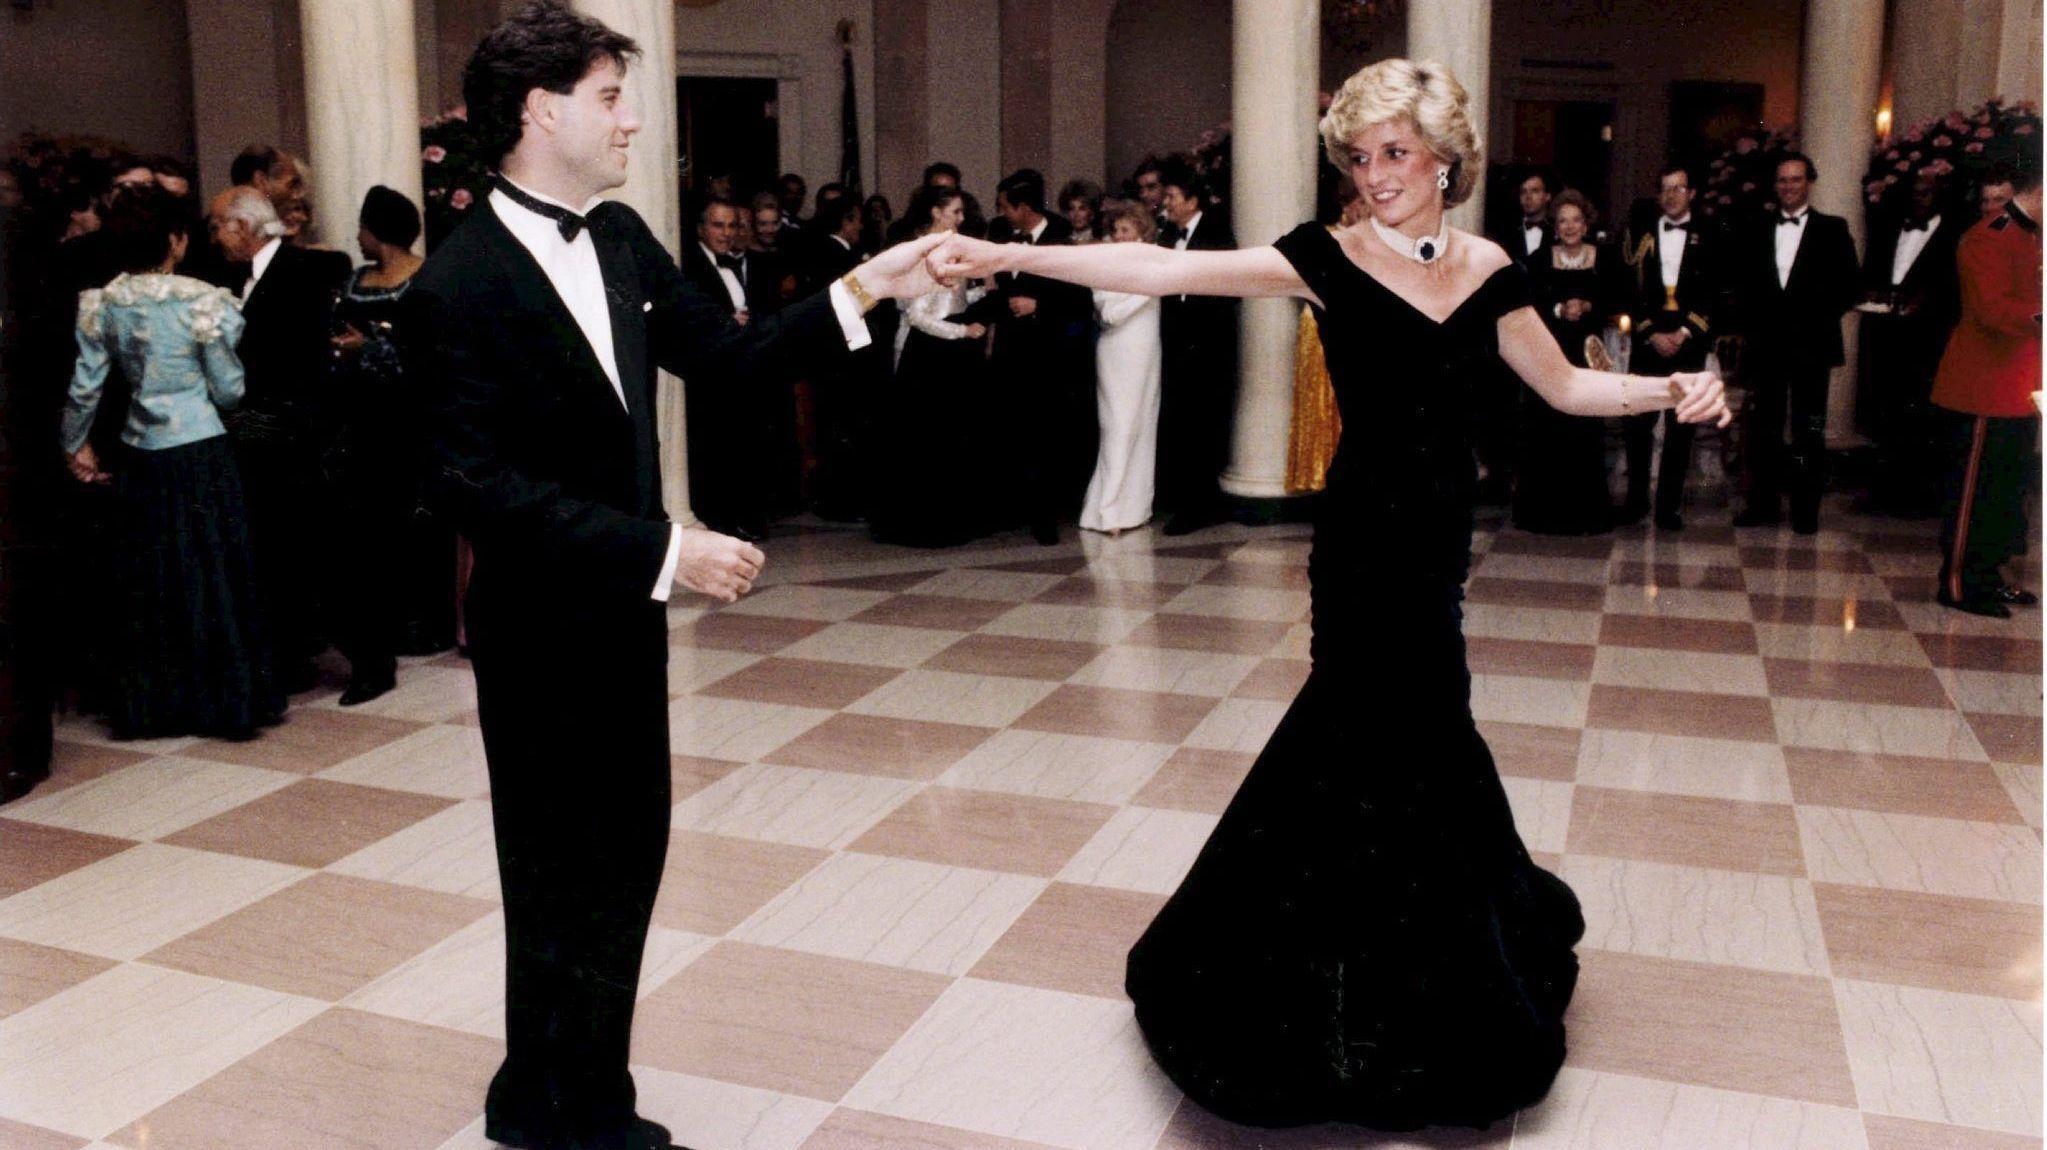 IKONISK ØYEBLIKK: Prinsesse Diana og John Travolta fikk de andre gjestene i Det hvite hus til å måpe da de svinget seg på dansegulvet i 1985. Foto: NTB scanpix